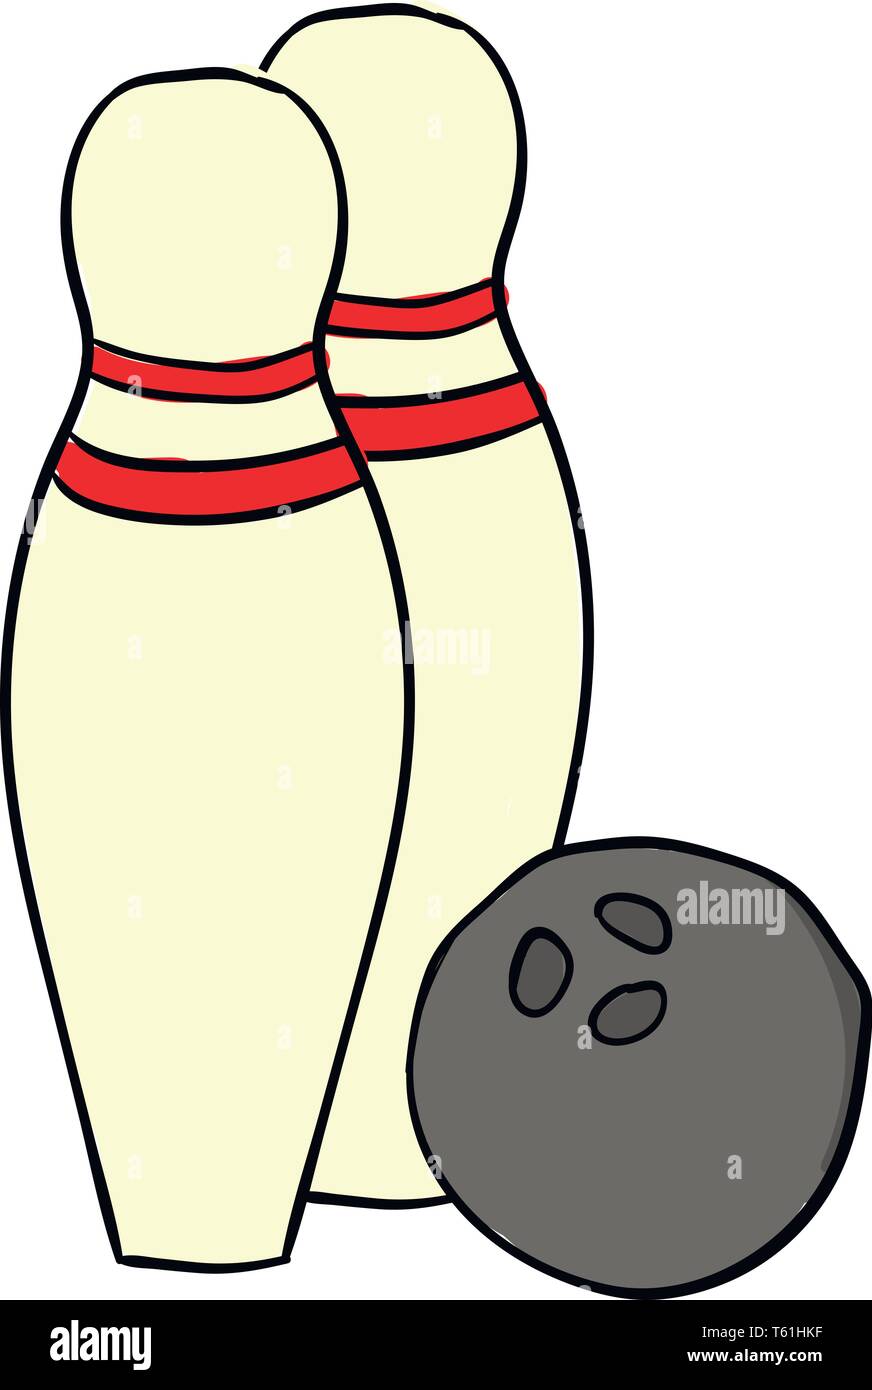 Ein graues Bowling Ball neben zwei gelbe Bowling Pins mit zwei roten Bändern am Hals jeder Vektor Farbe, Zeichnung oder Abbildung Stock Vektor